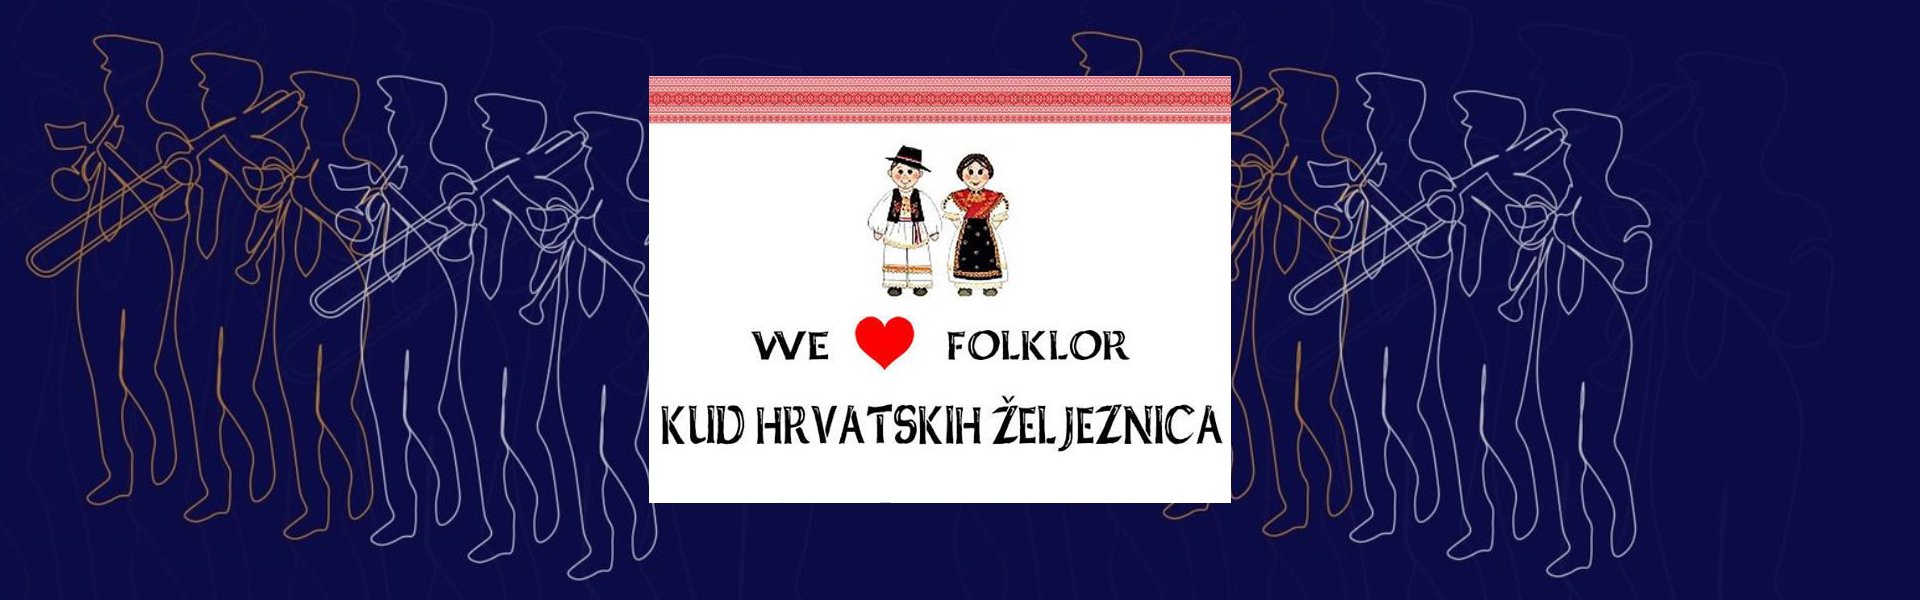 banner-1-kudhzvz